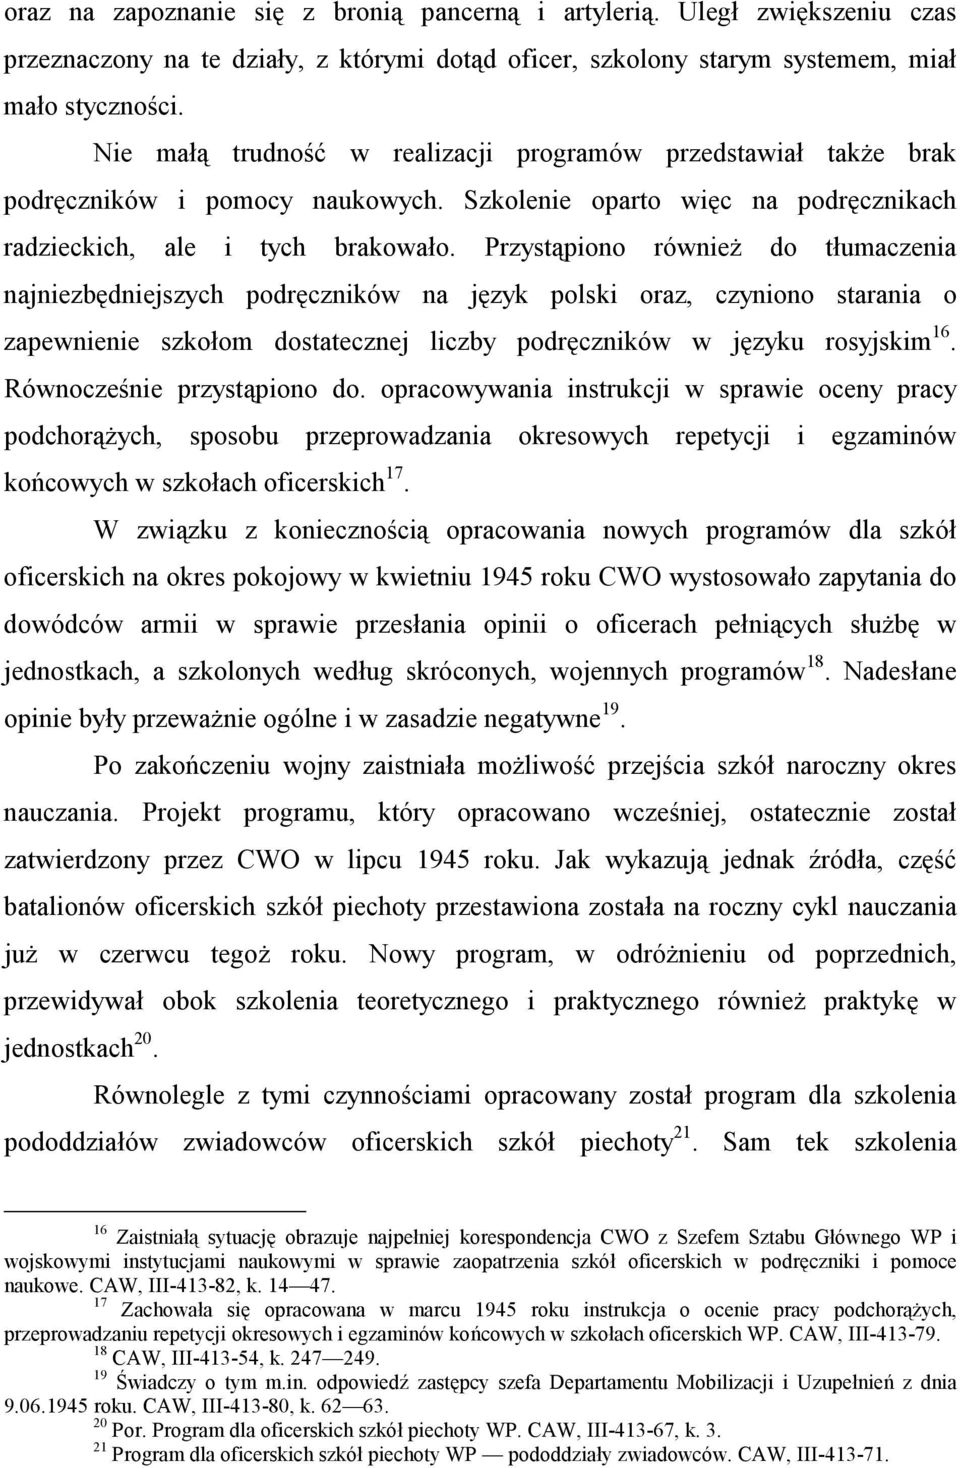 Przystąpiono również do tłumaczenia najniezbędniejszych podręczników na język polski oraz, czyniono starania o zapewnienie szkołom dostatecznej liczby podręczników w języku rosyjskim 16.